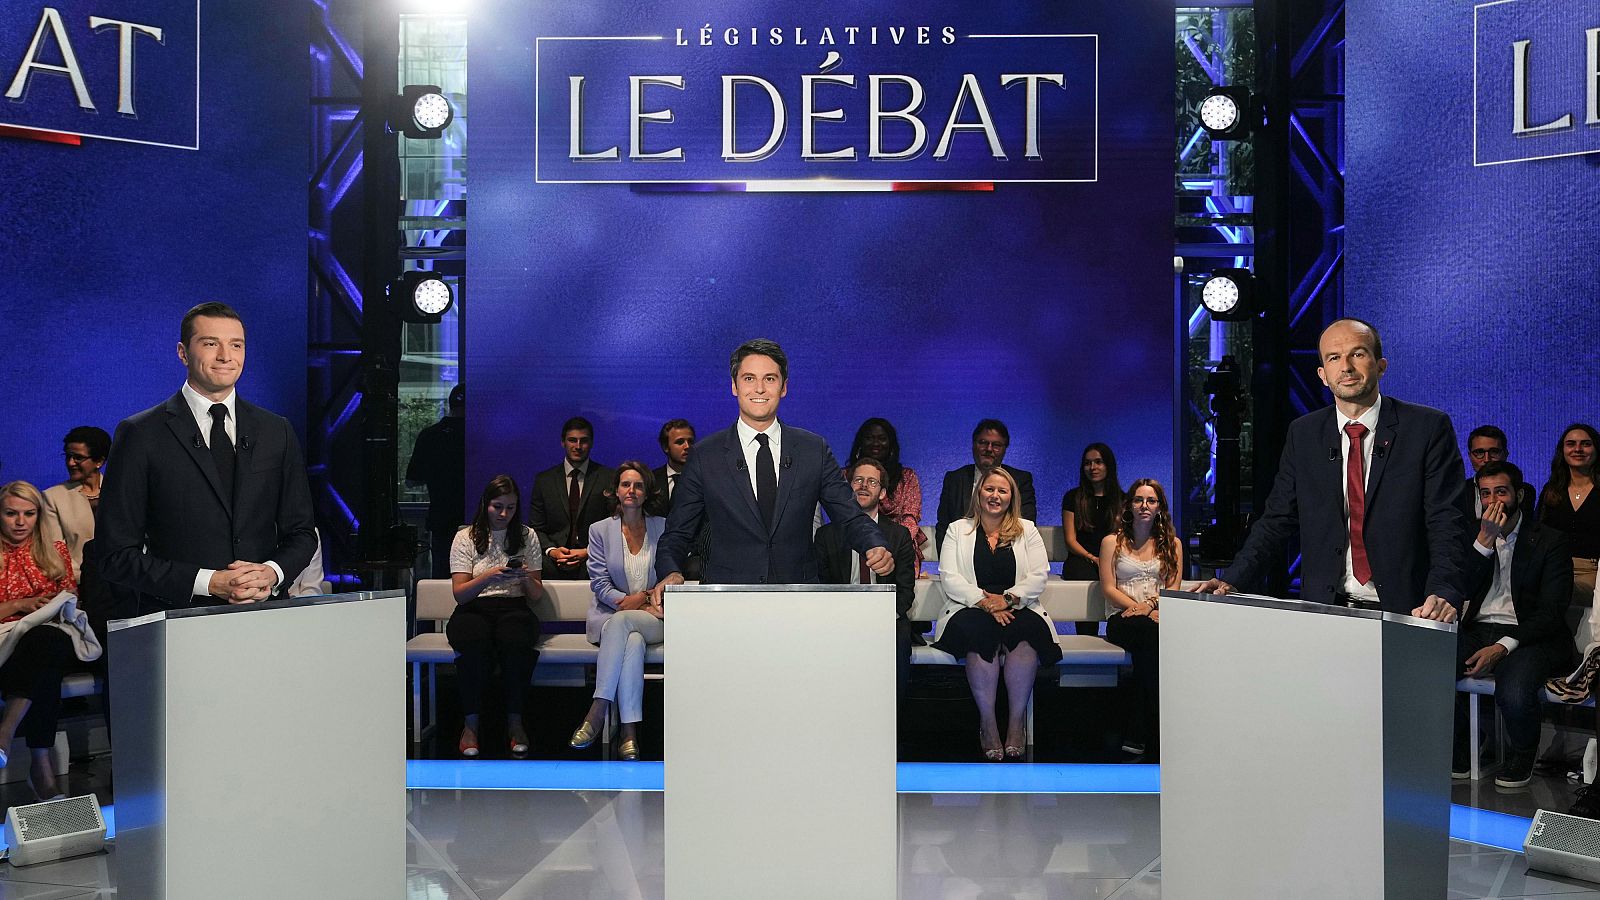 Francia celebra su último debate electoral antes de las elecciones con ataques constantes entre candidatos